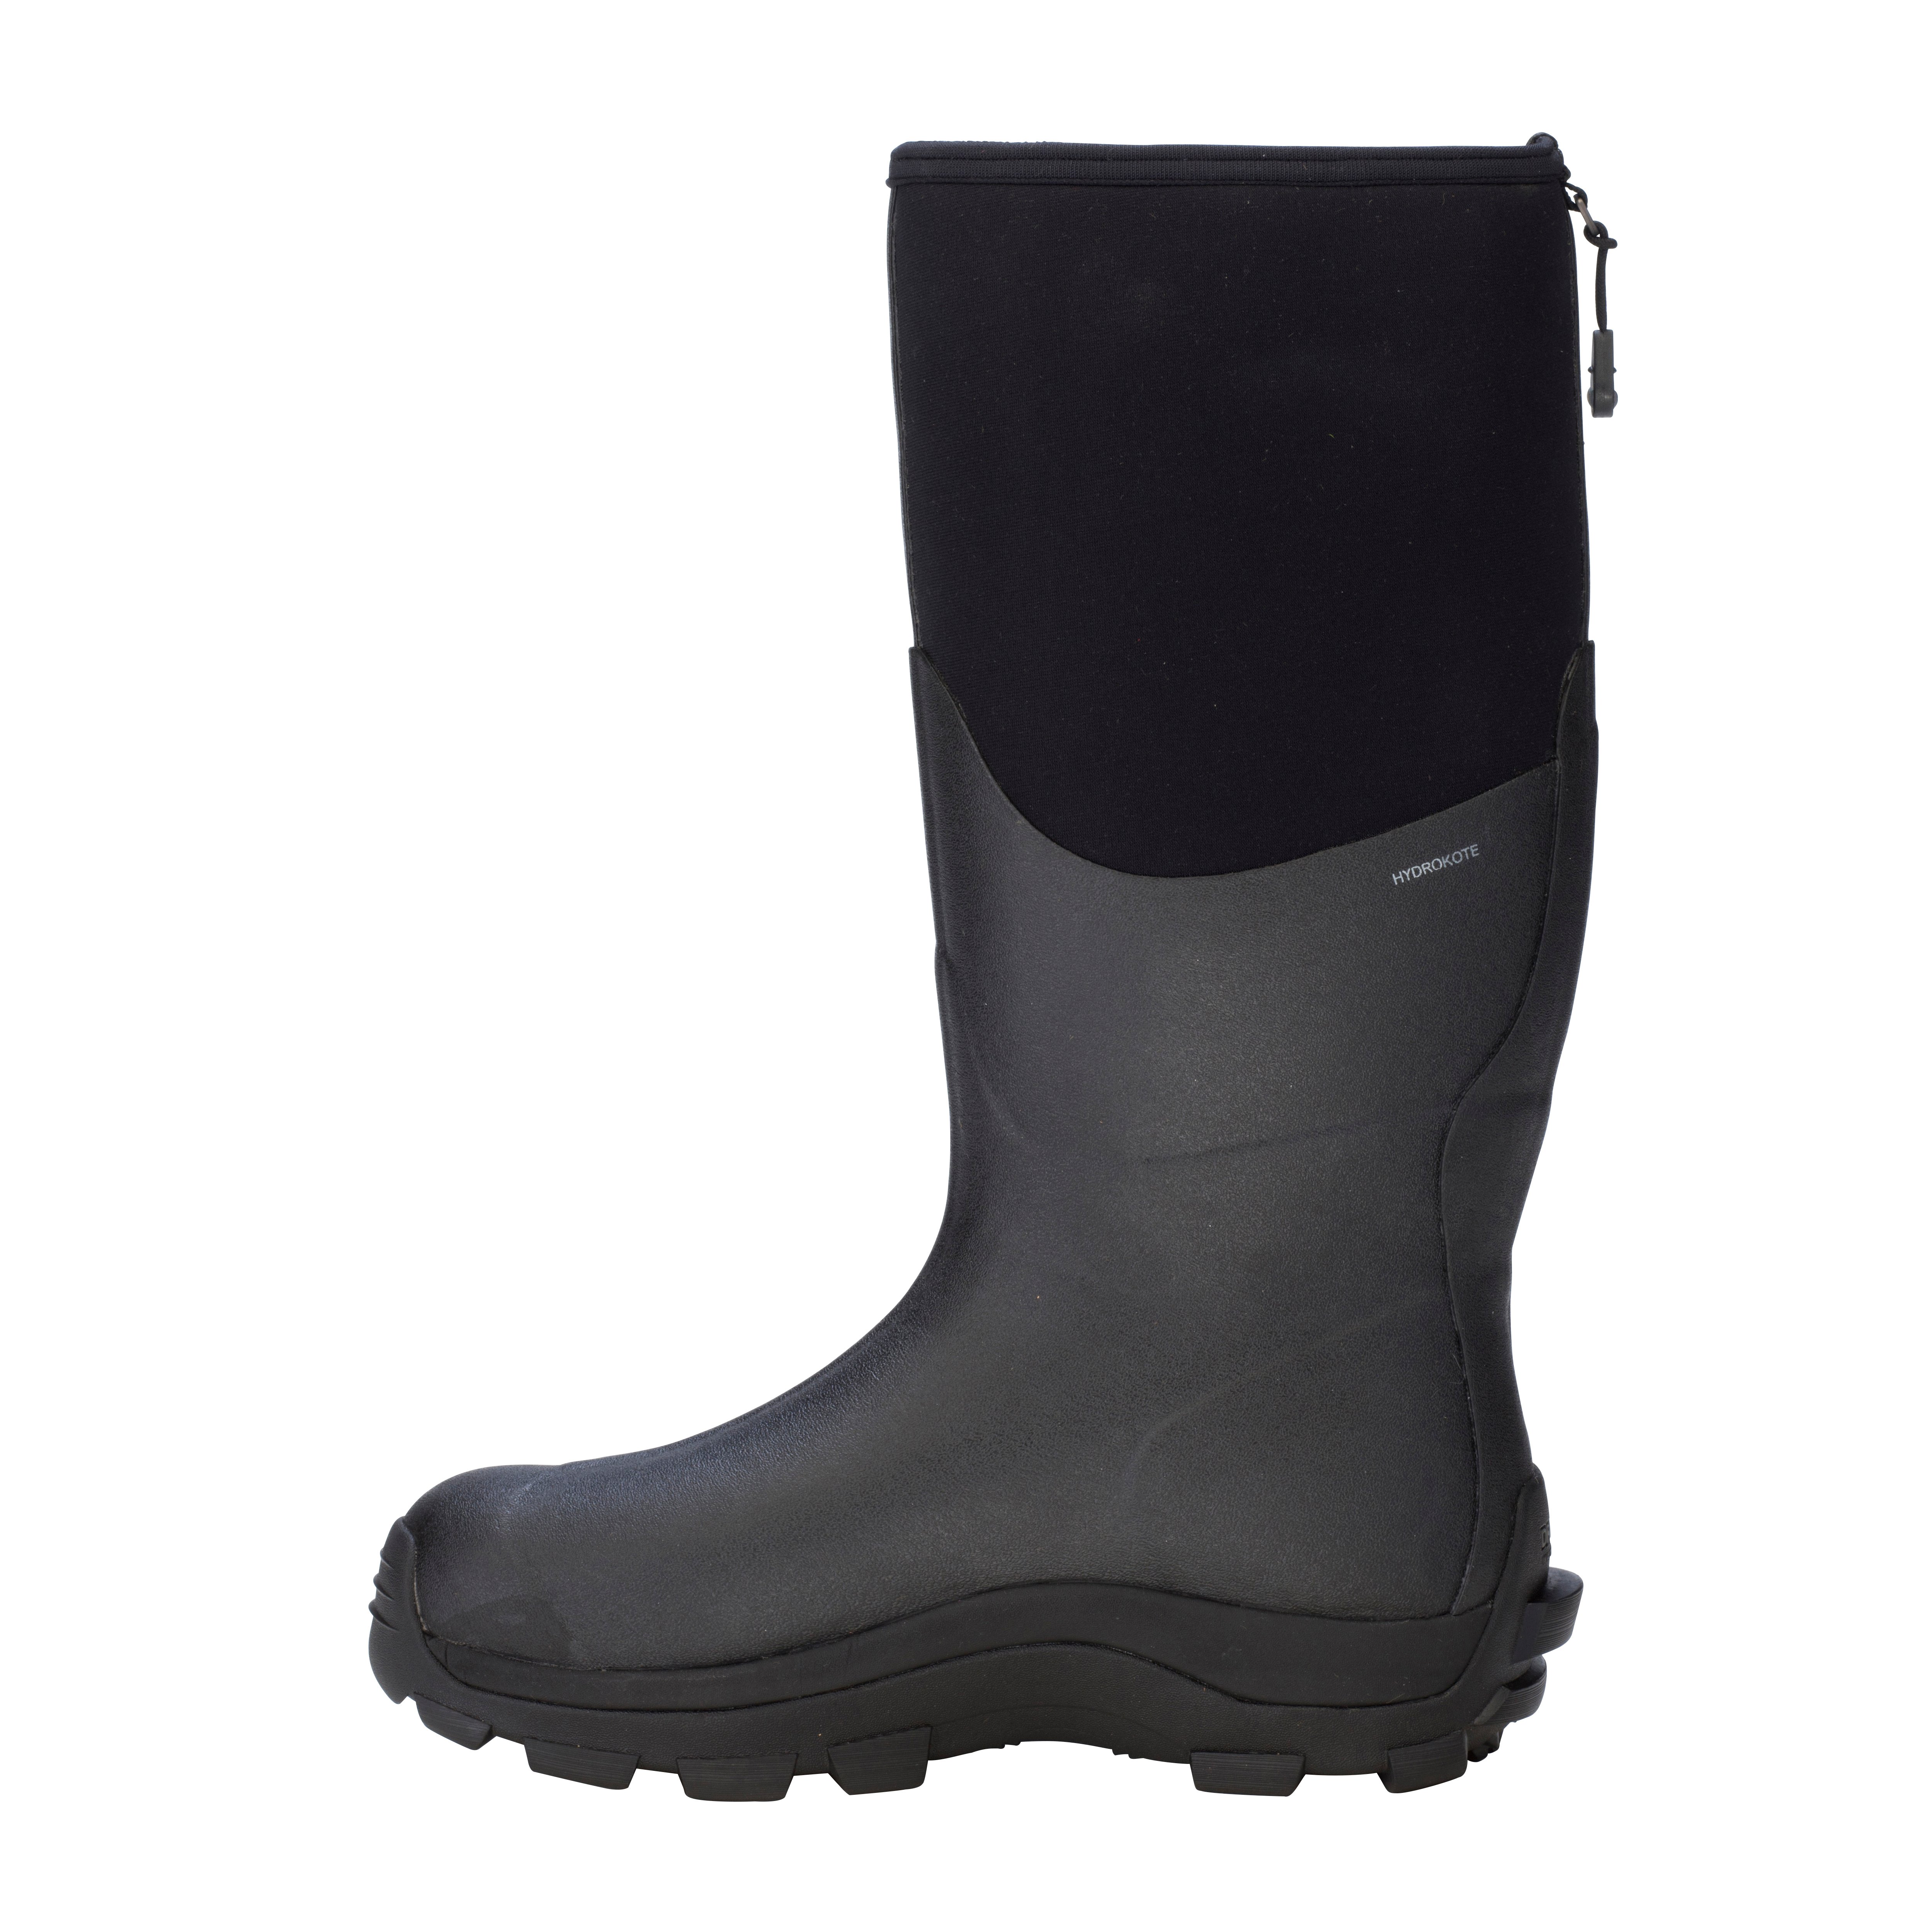 Arctic Storm Men's Hi – Dryshod Waterproof Boots